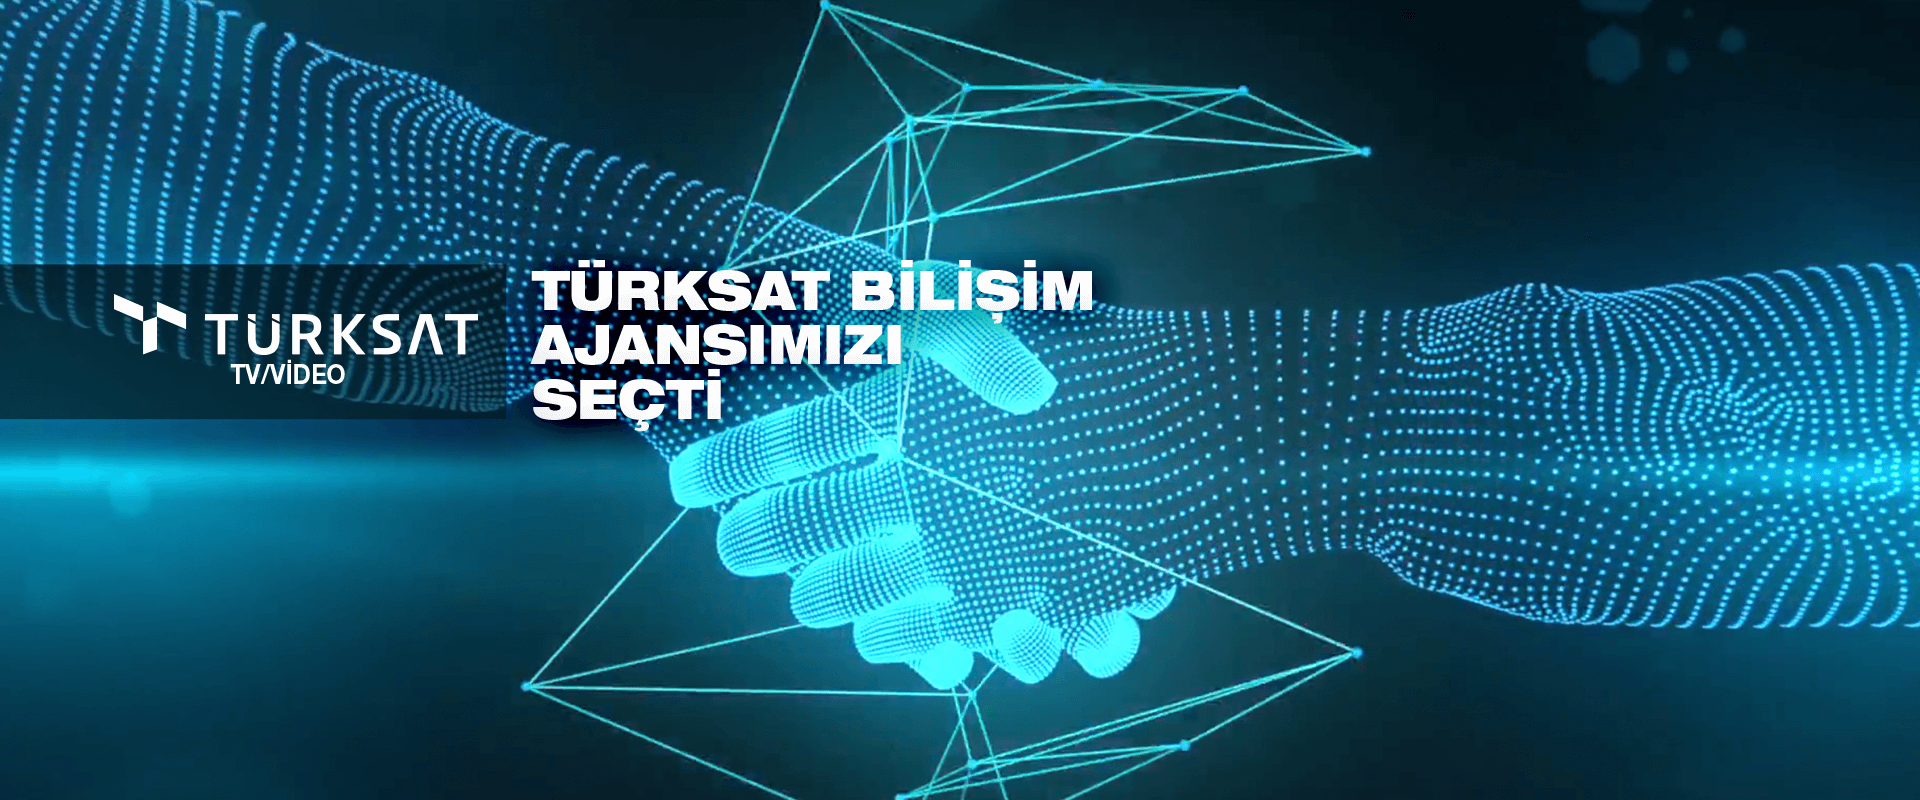 Türksat Bilişim Ajansımızı Seçti !